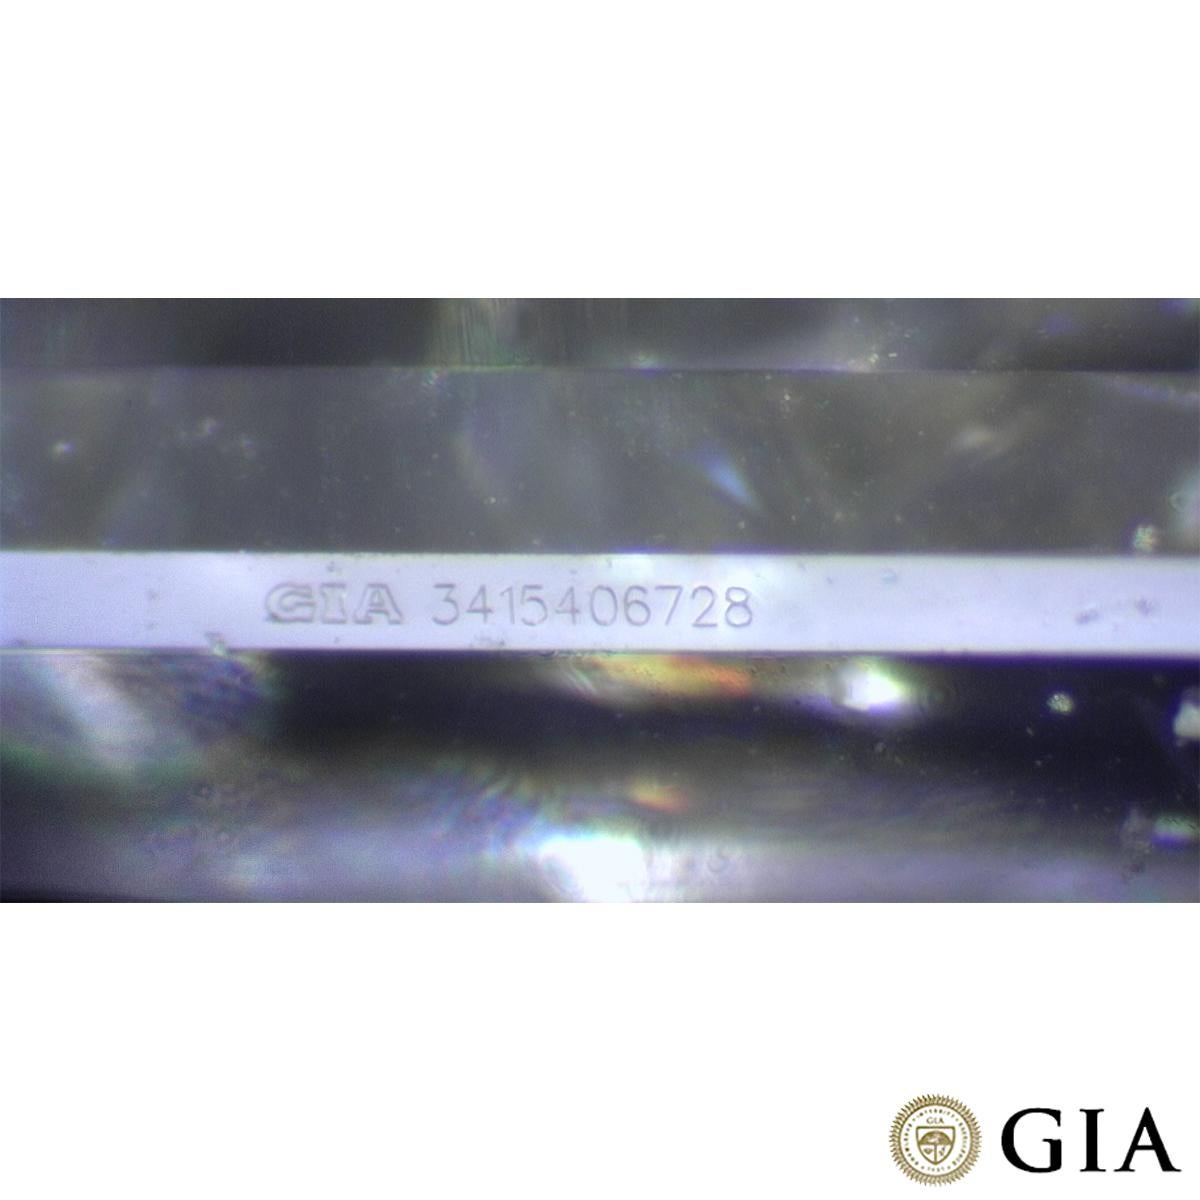 GIA Certified Emerald Cut Diamond Pendant 0.41 Carat E/SI1 For Sale 1